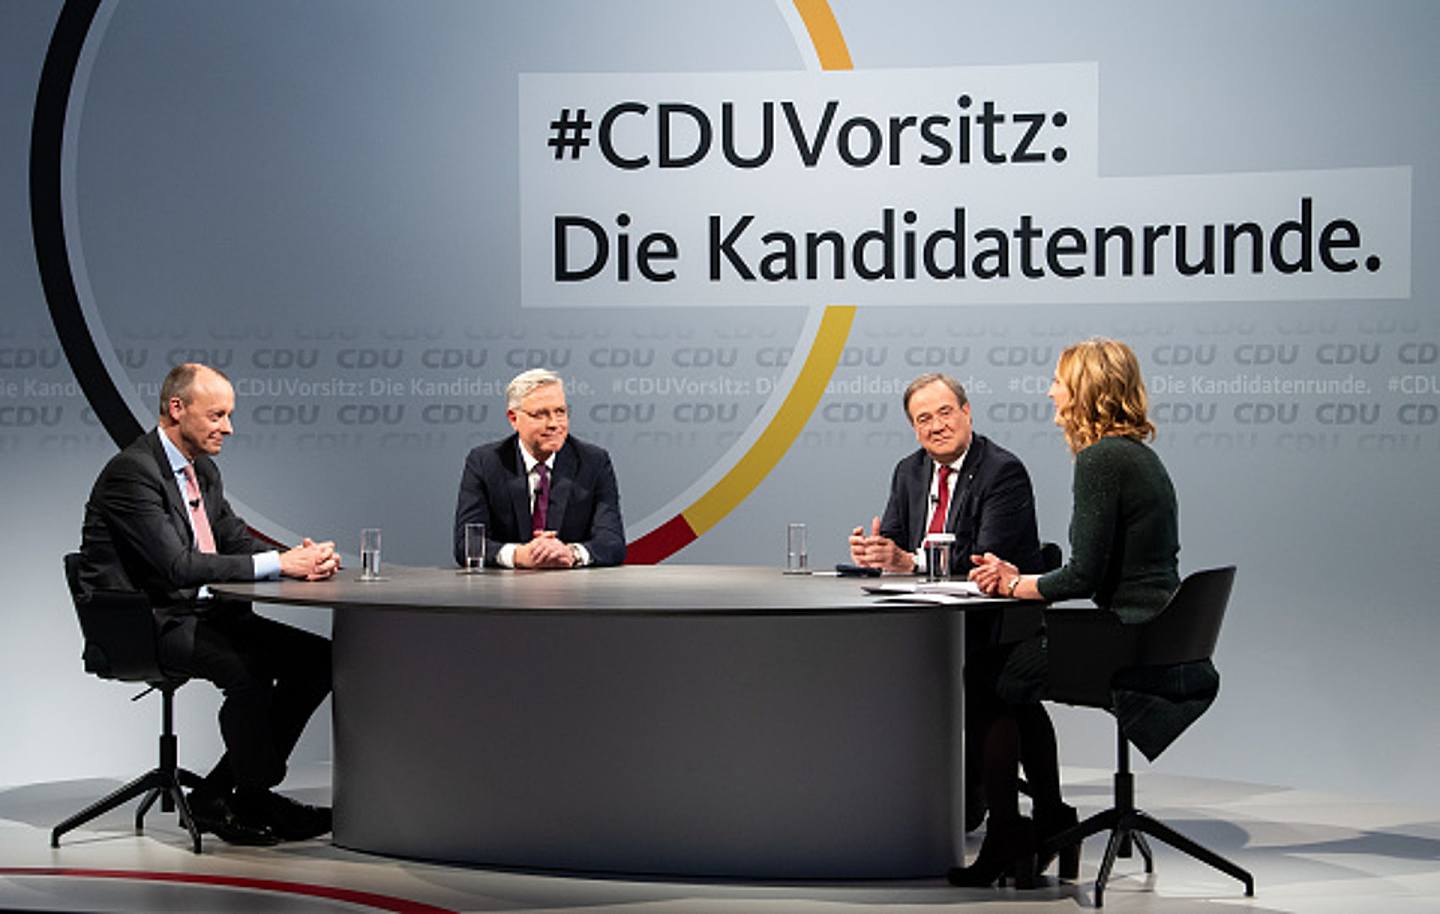 2020年12月14日，三位竞选新一届基民盟党魁之位的候选人在柏林基民盟总部参加与基民盟党员的在线互动。 从左至右依次为默茨、吕特根以及拉雪特。 （Getty Images）